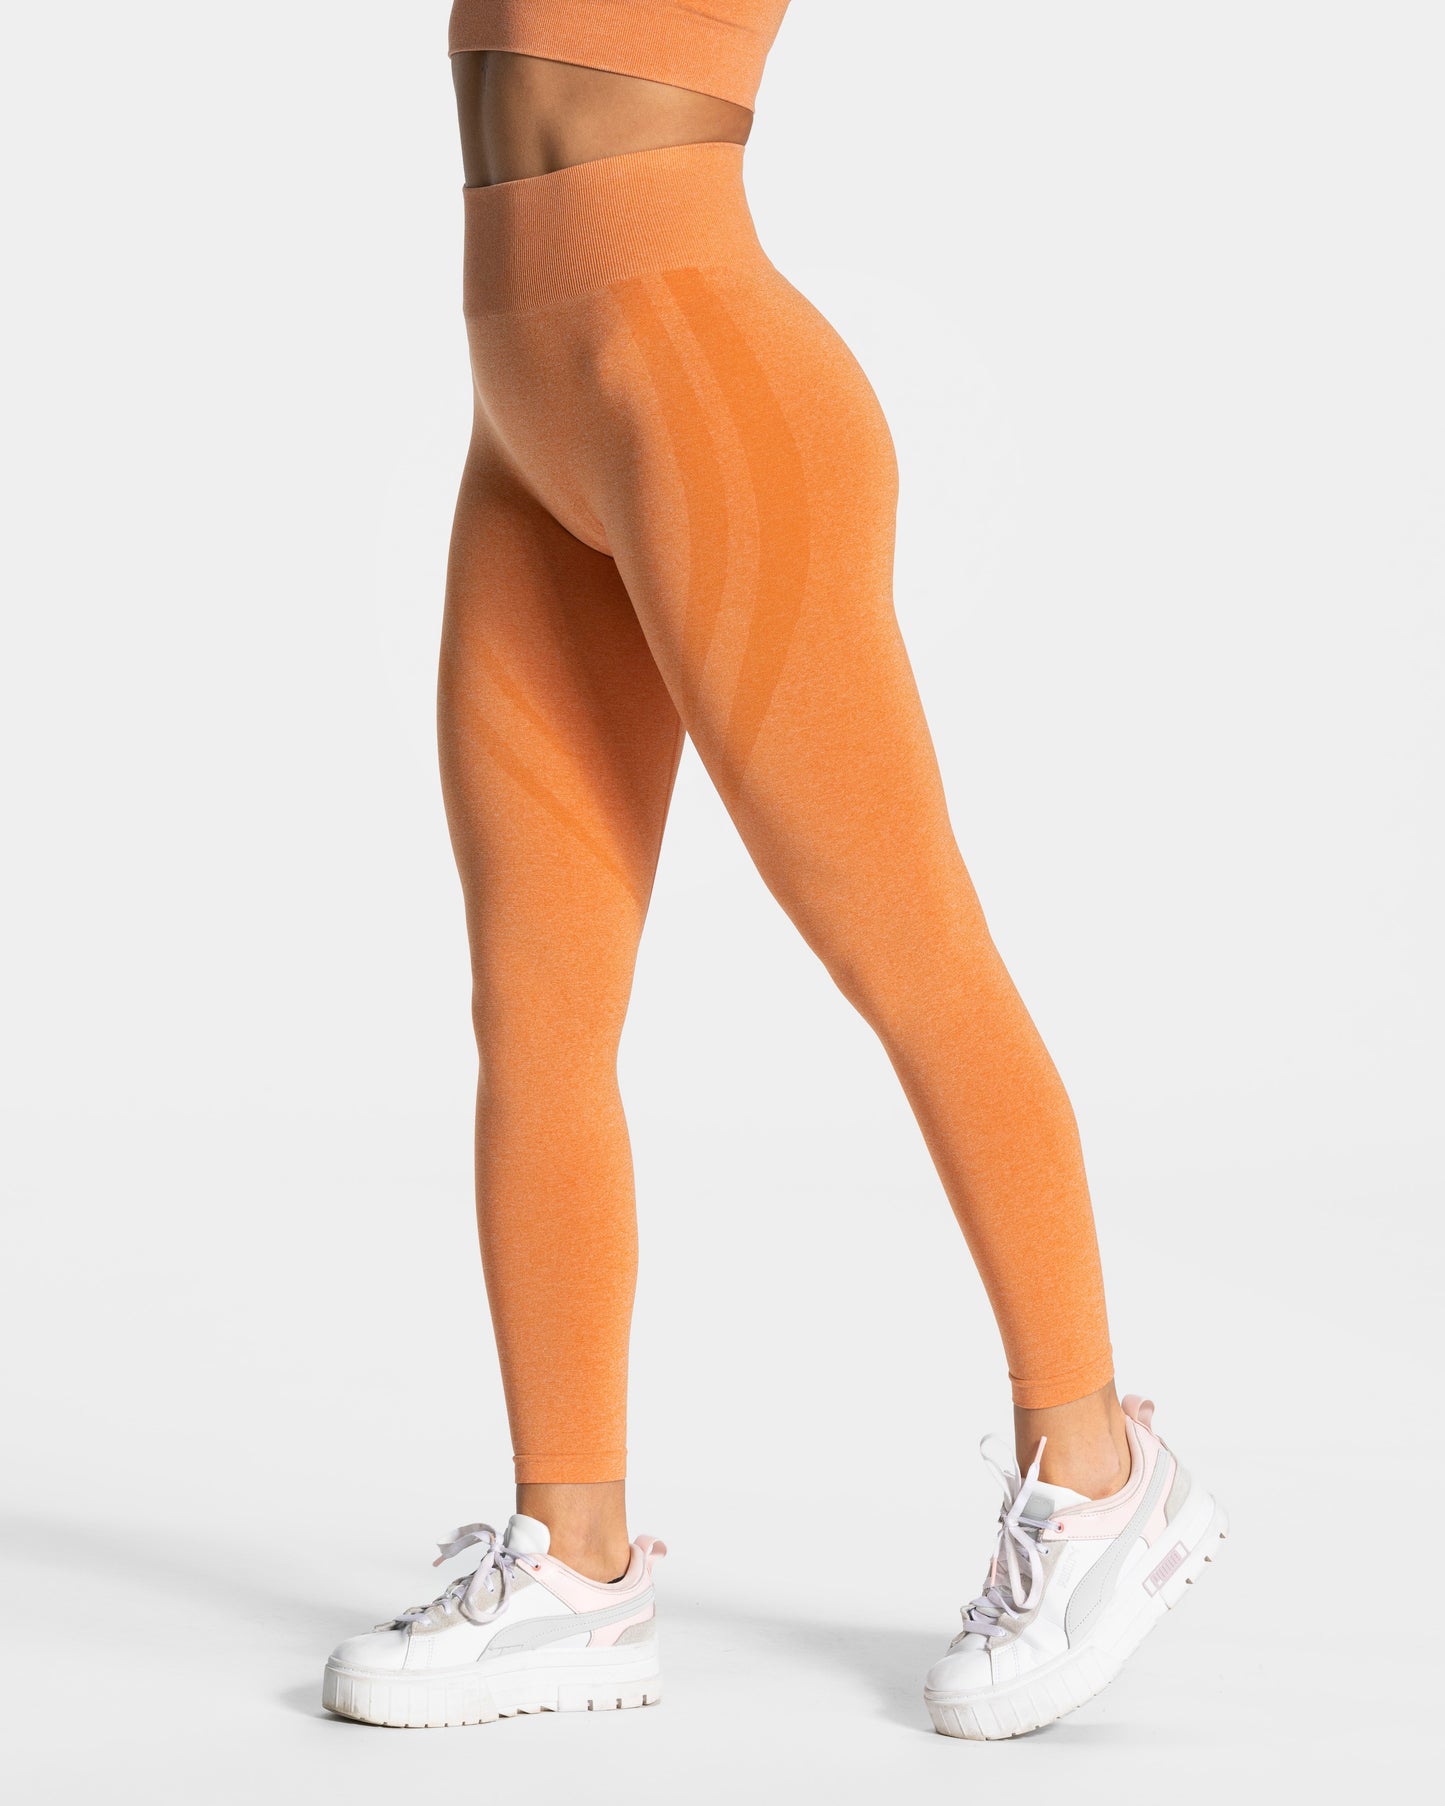 Evolution V2 Leggings "Orange"